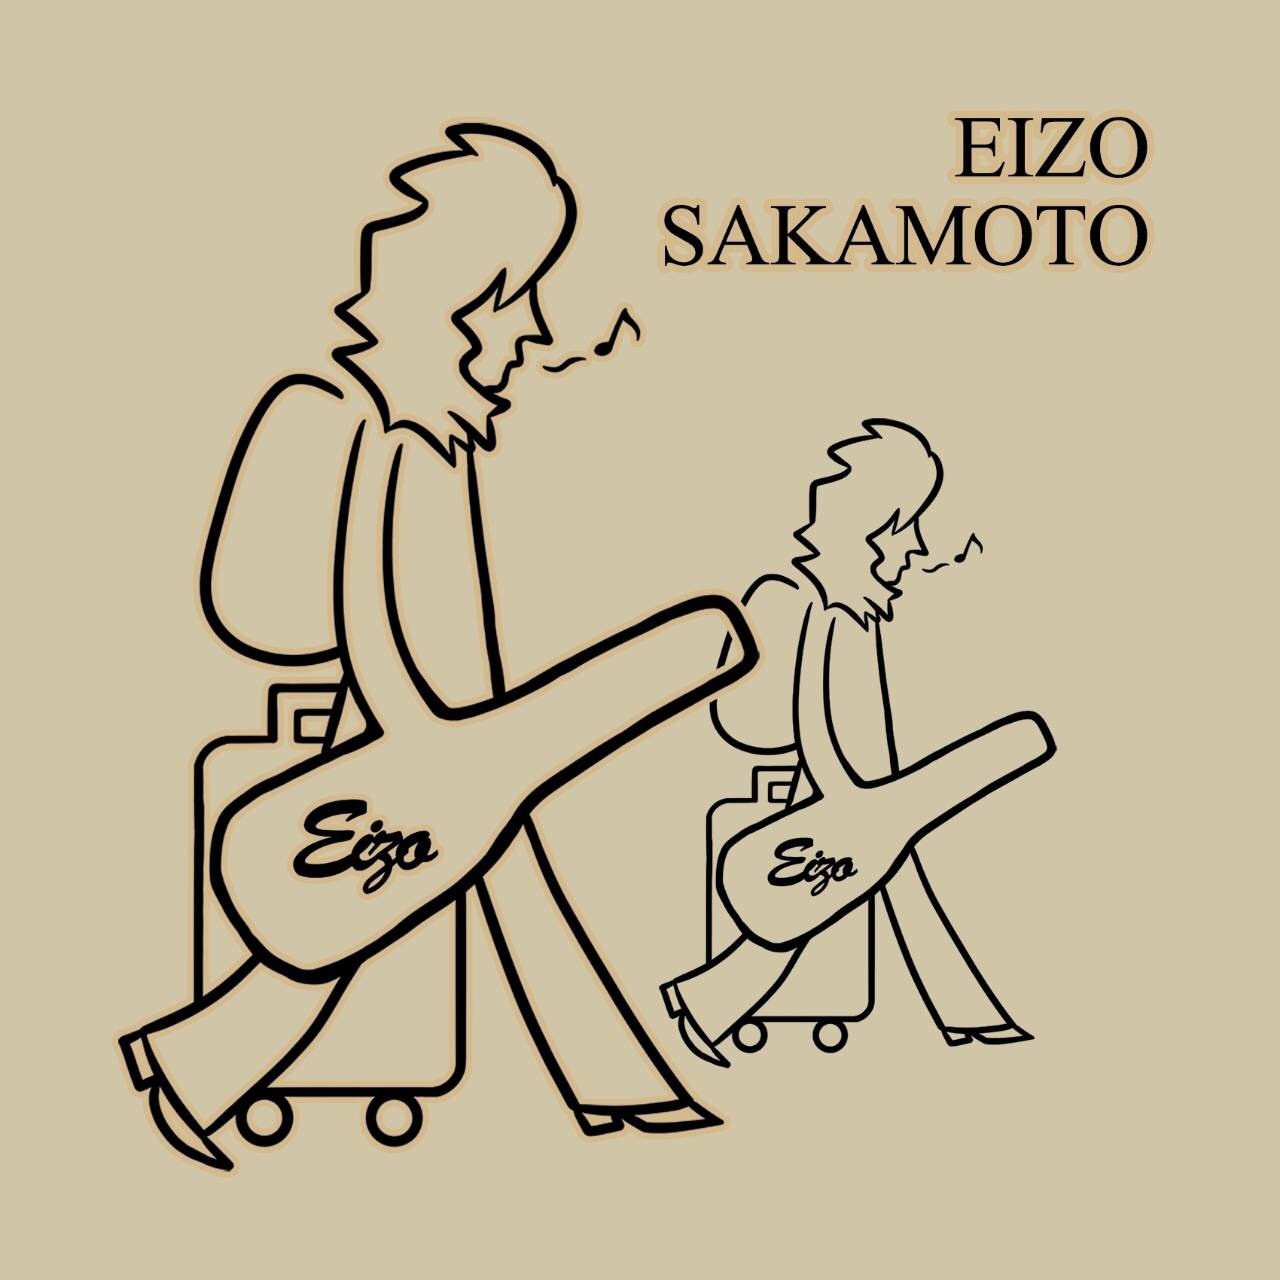 EIZO Sakamoto Official  Ownd